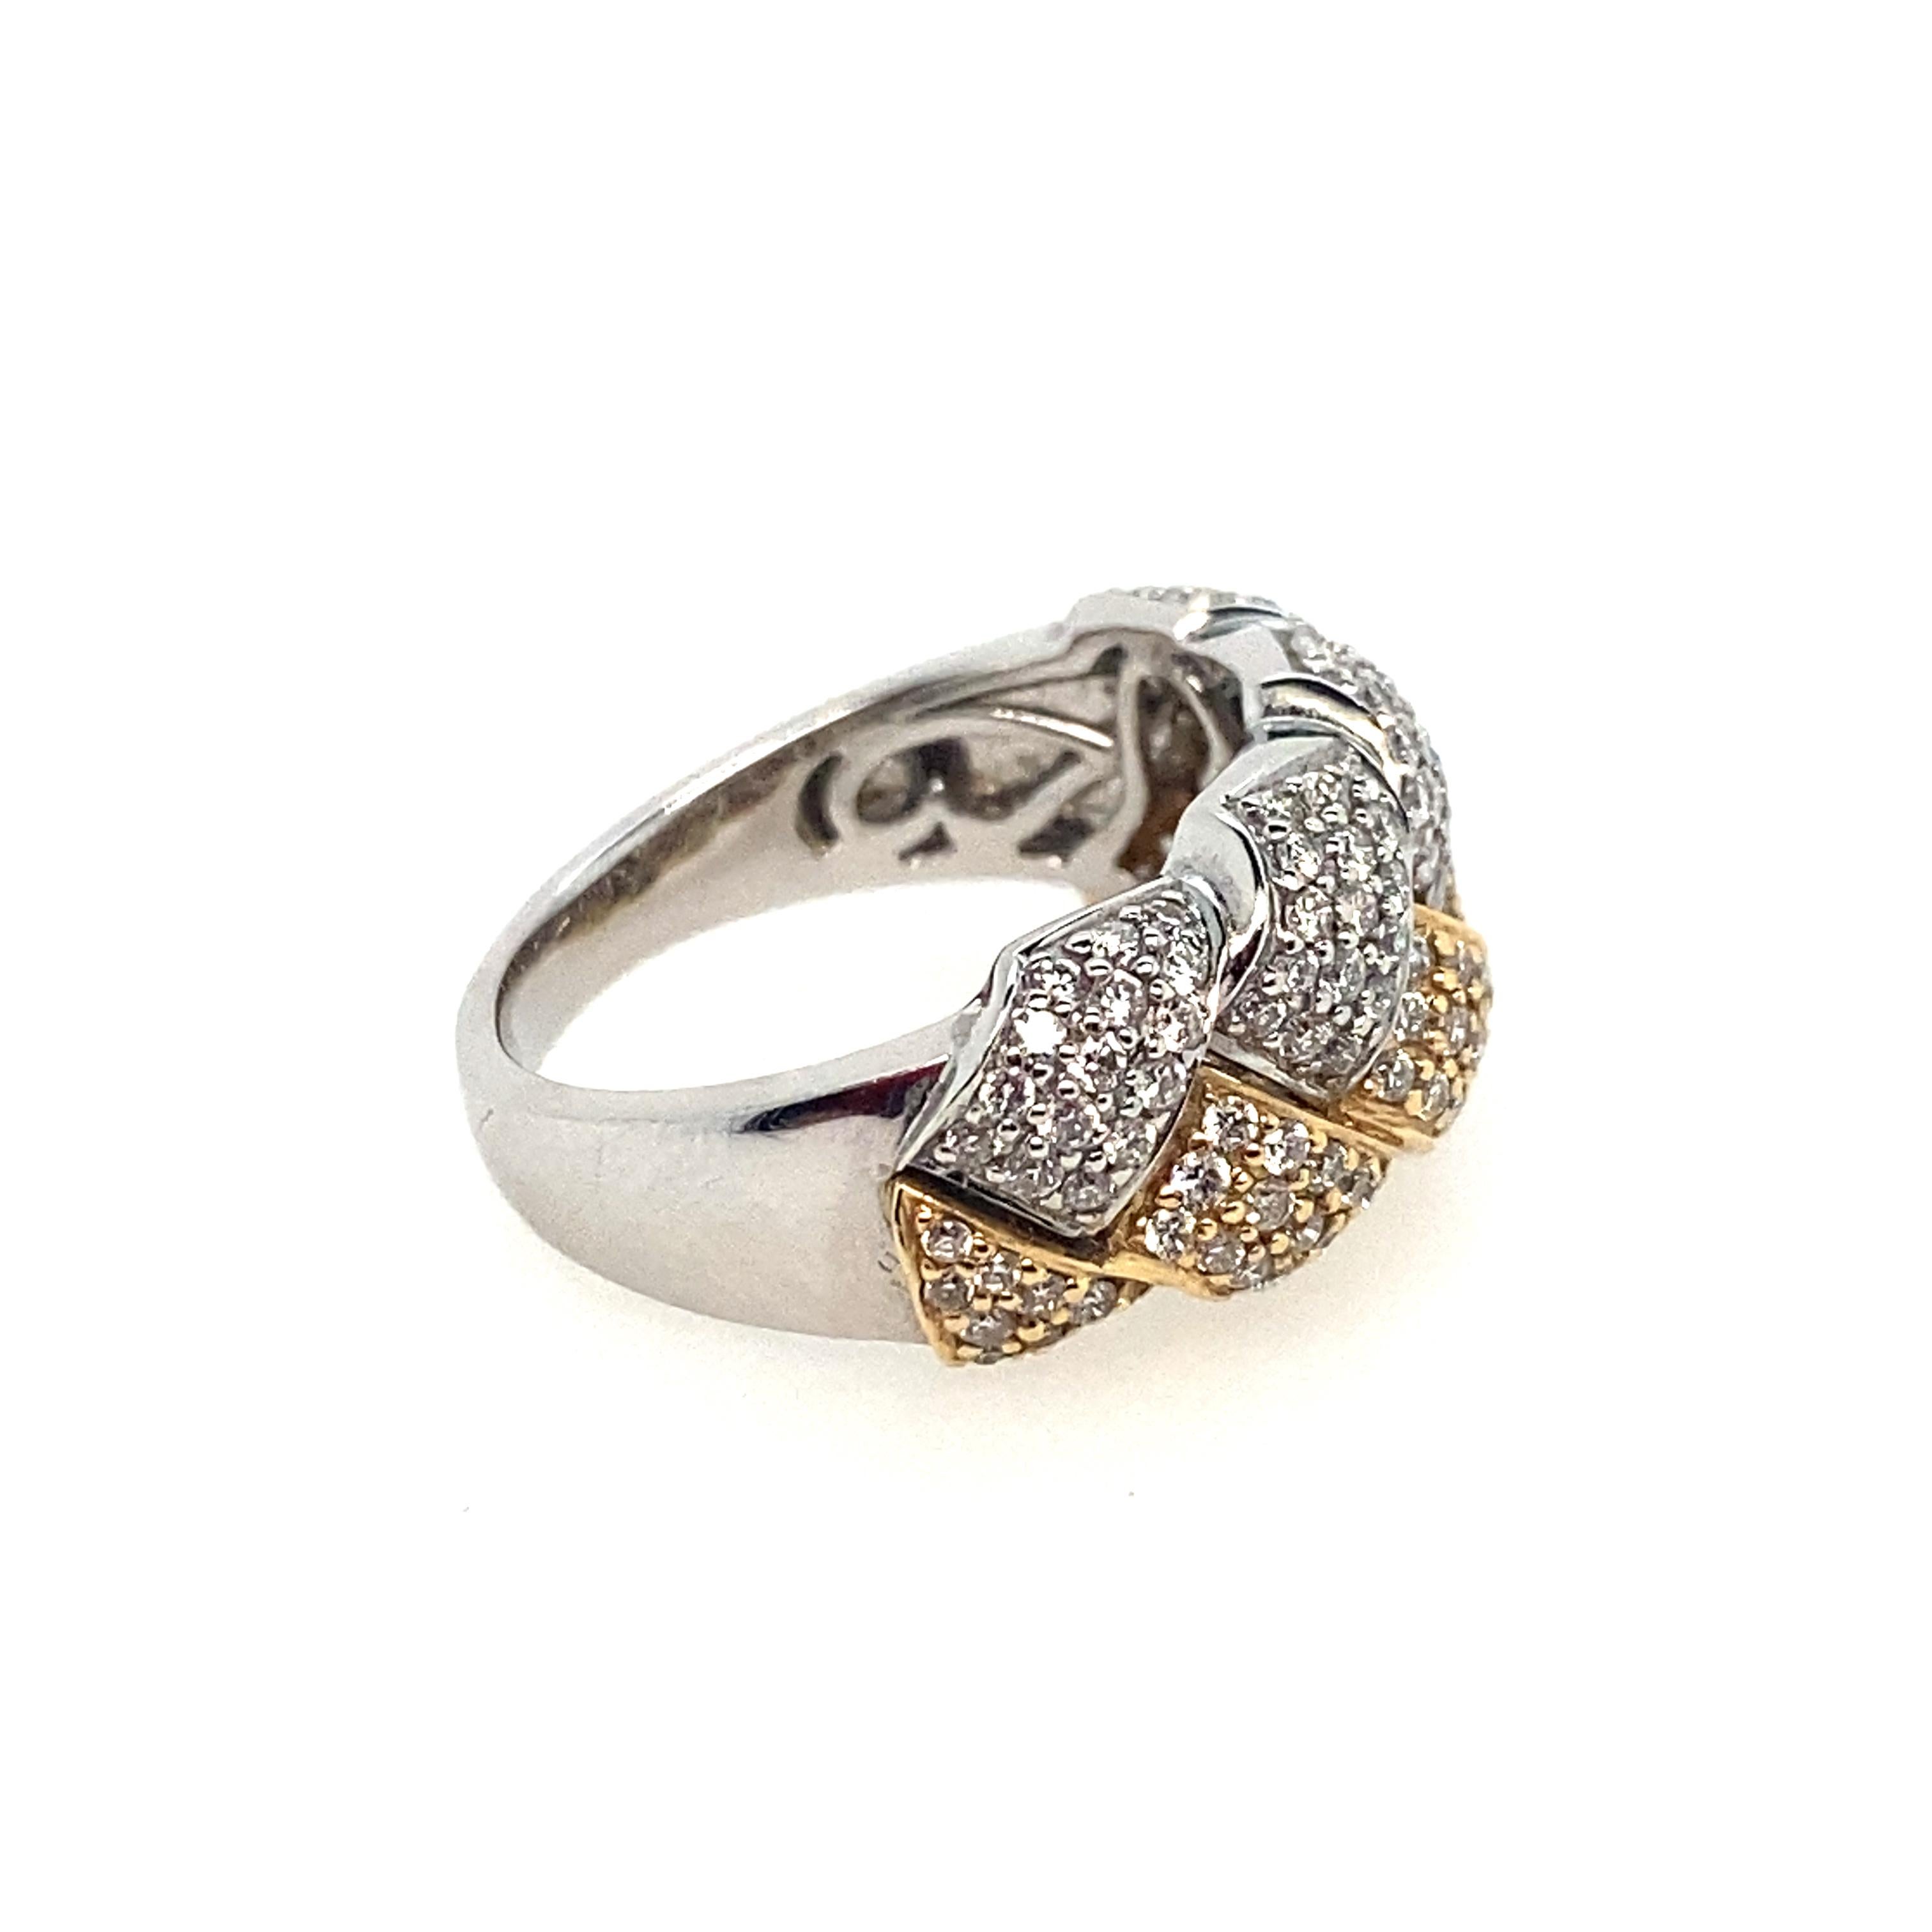 Gorgeous Diamond 14kt zweifarbig gewebt breite Band Ring.  Das Gesamtgewicht der Diamanten beträgt 1,00cts.  Sie haben die Farbe H und die Reinheit SI1.  Dieser atemberaubende, klassische Zweifarben-Look passt zu allen Schmuckstücken Ihrer